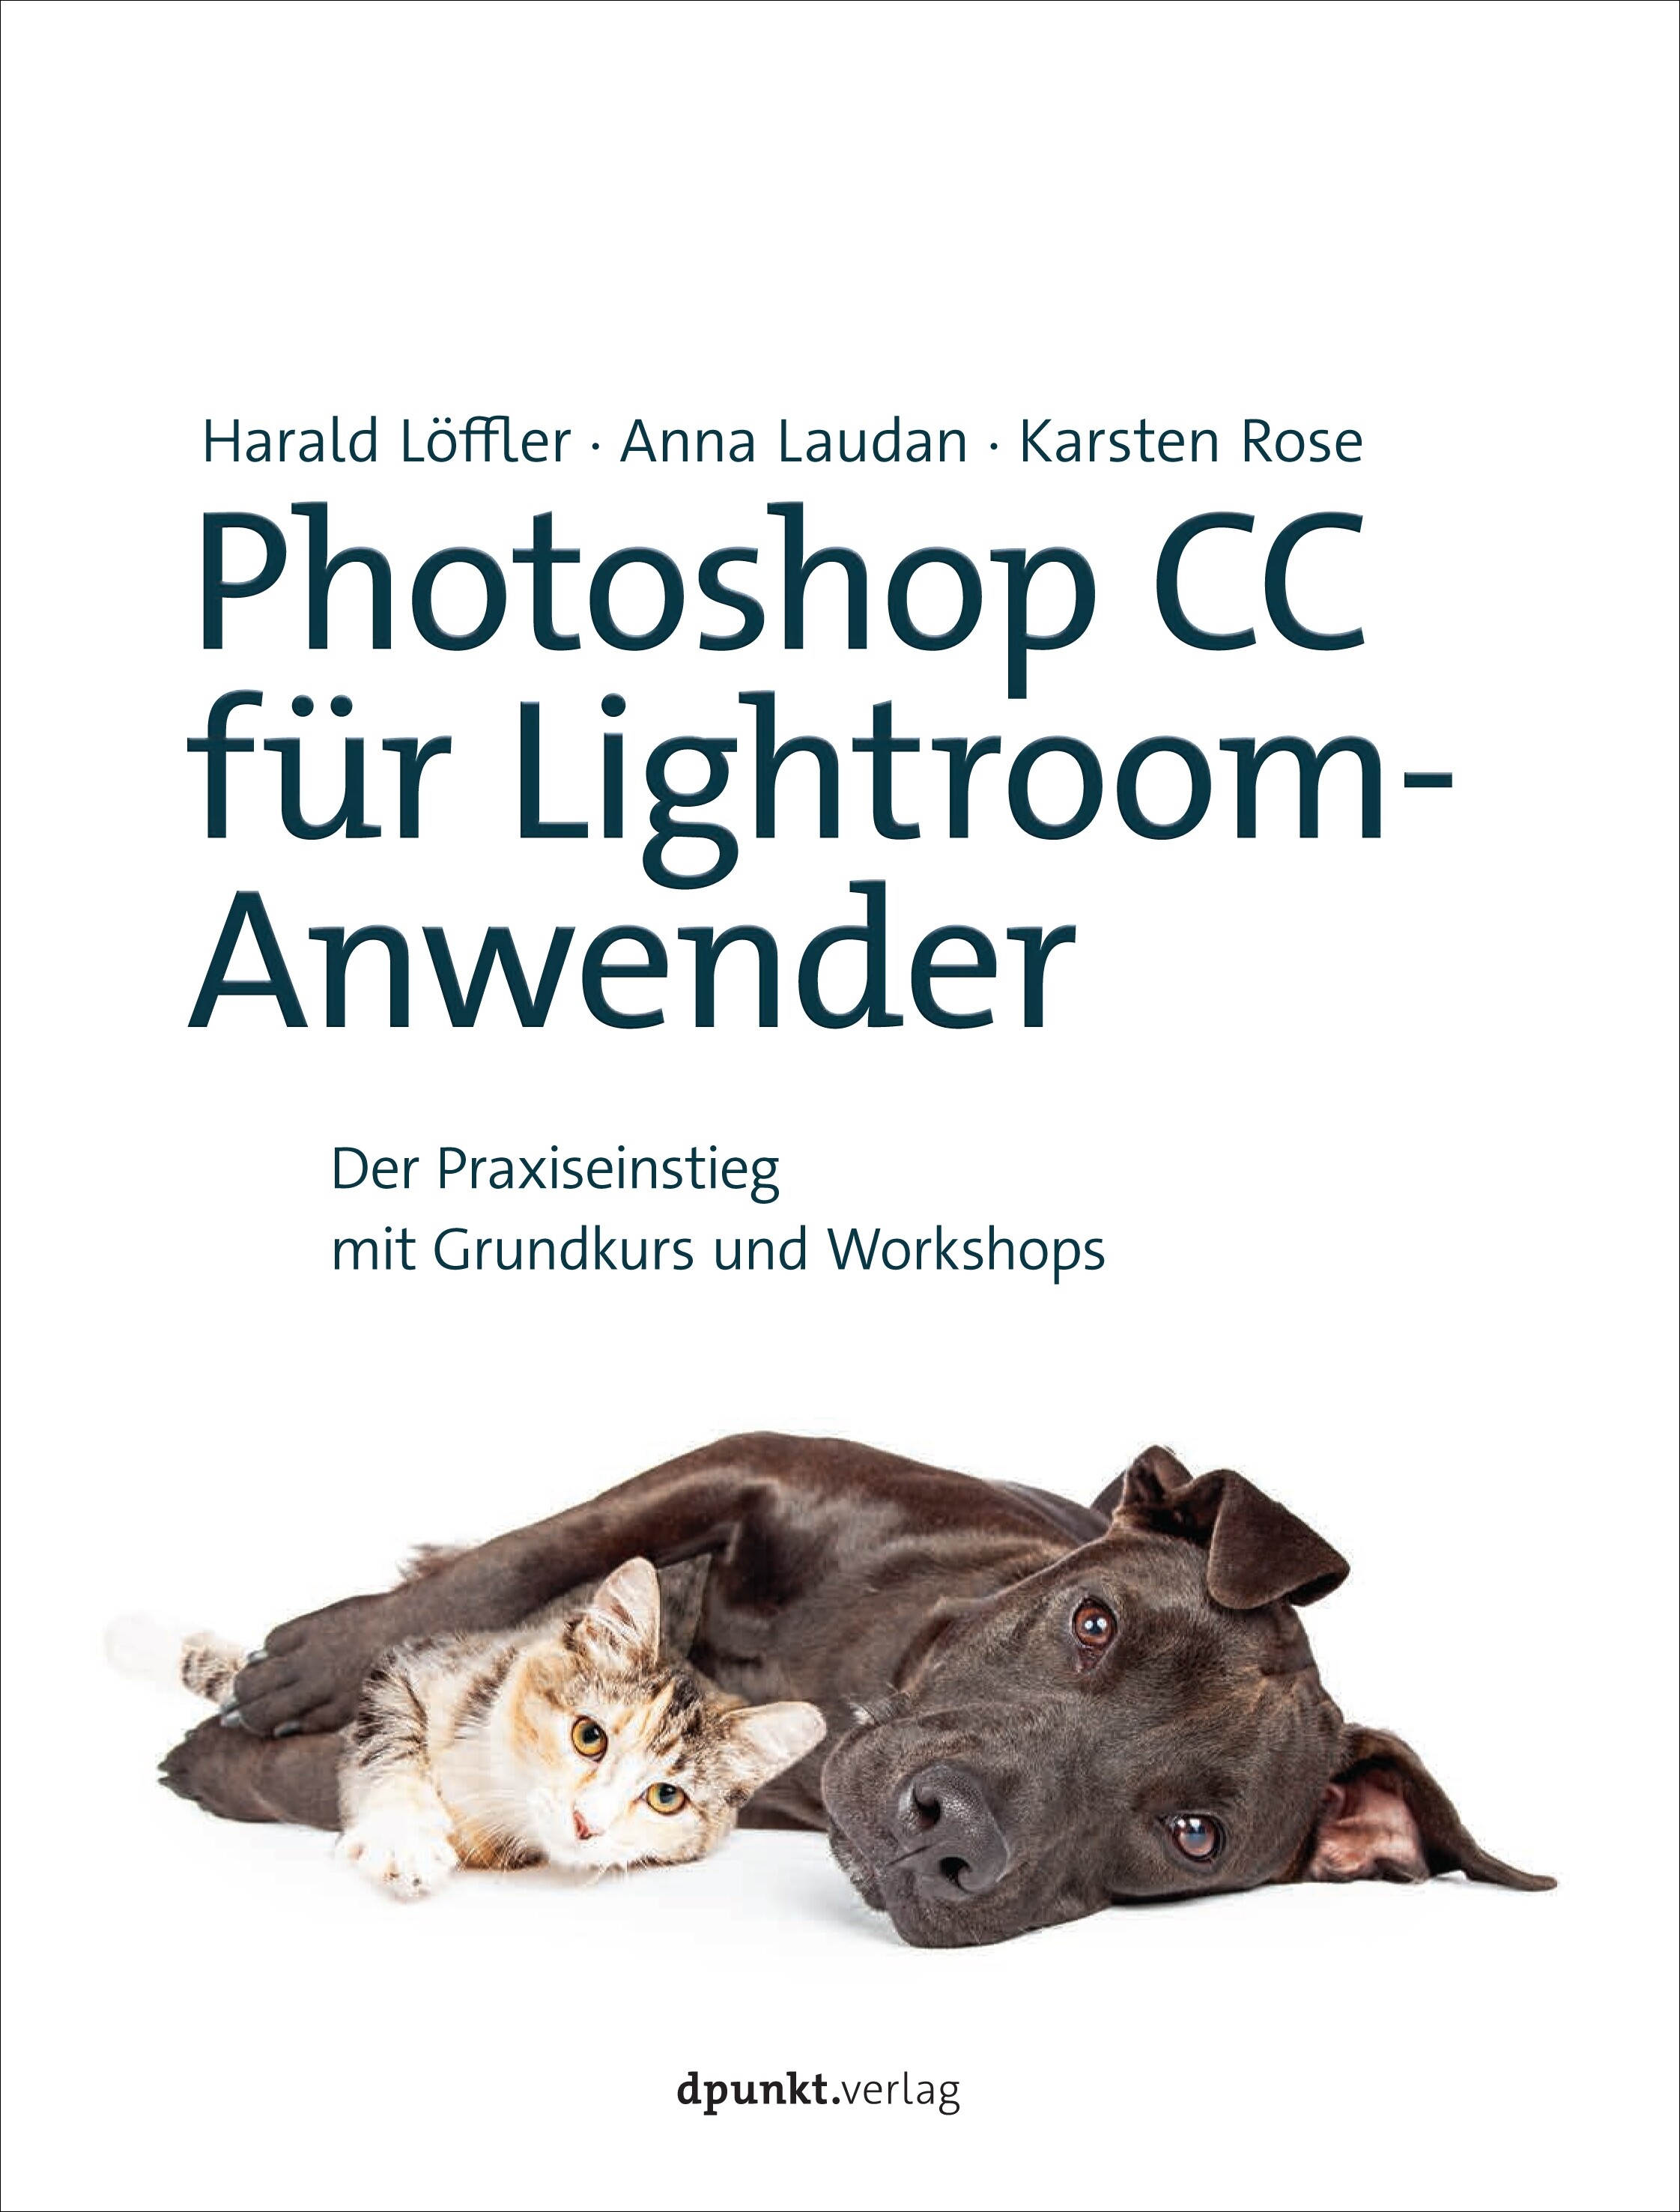 Photoshop CC für Lightroom- Anwender